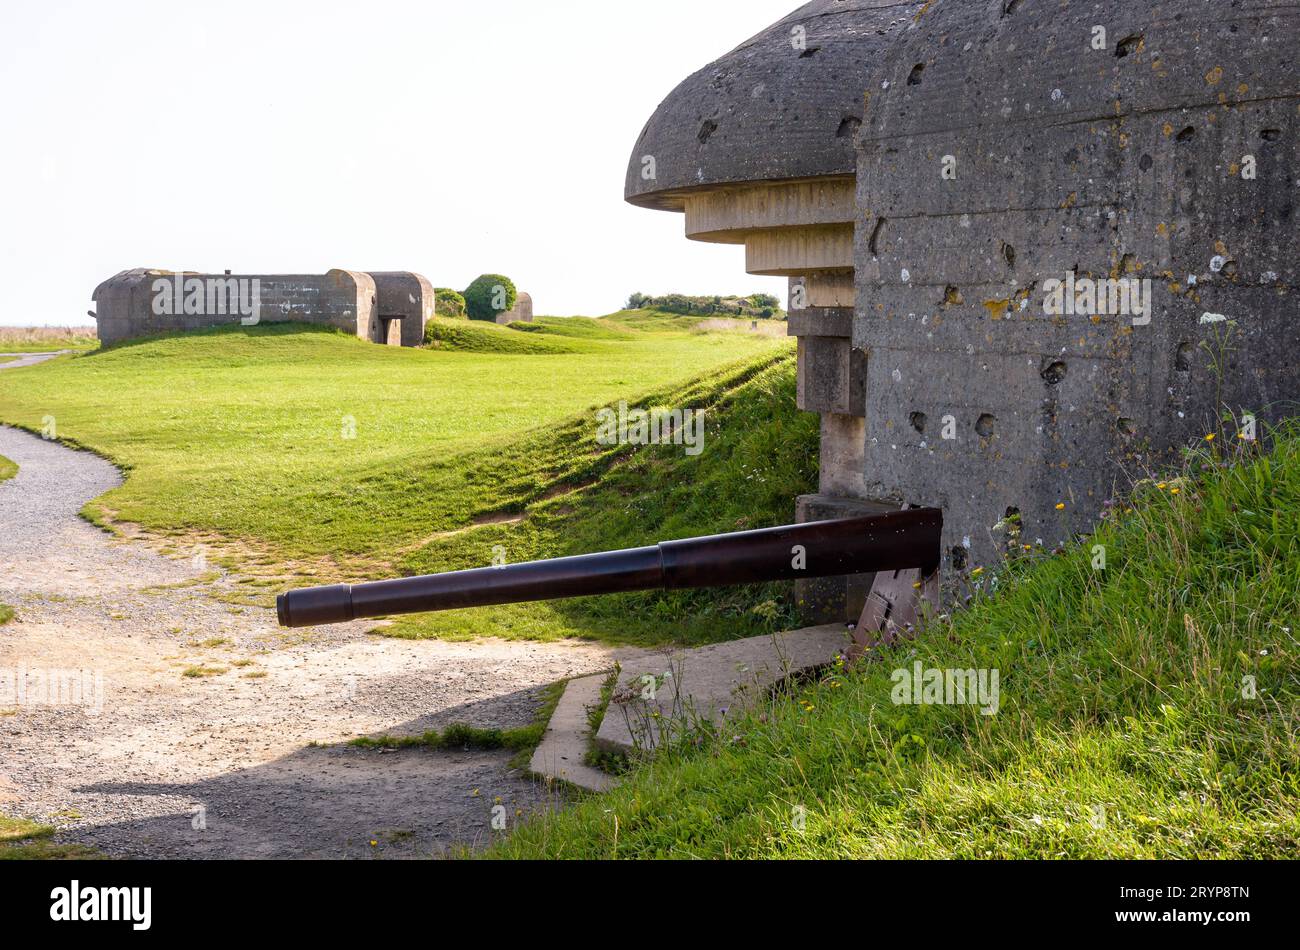 Deux bunkers tenant un canon de 150 mm dans la batterie de longues-sur-Mer en Normandie, une batterie d'artillerie côtière allemande de la Seconde Guerre mondiale faisant partie du mur de l'Atlantique. Banque D'Images